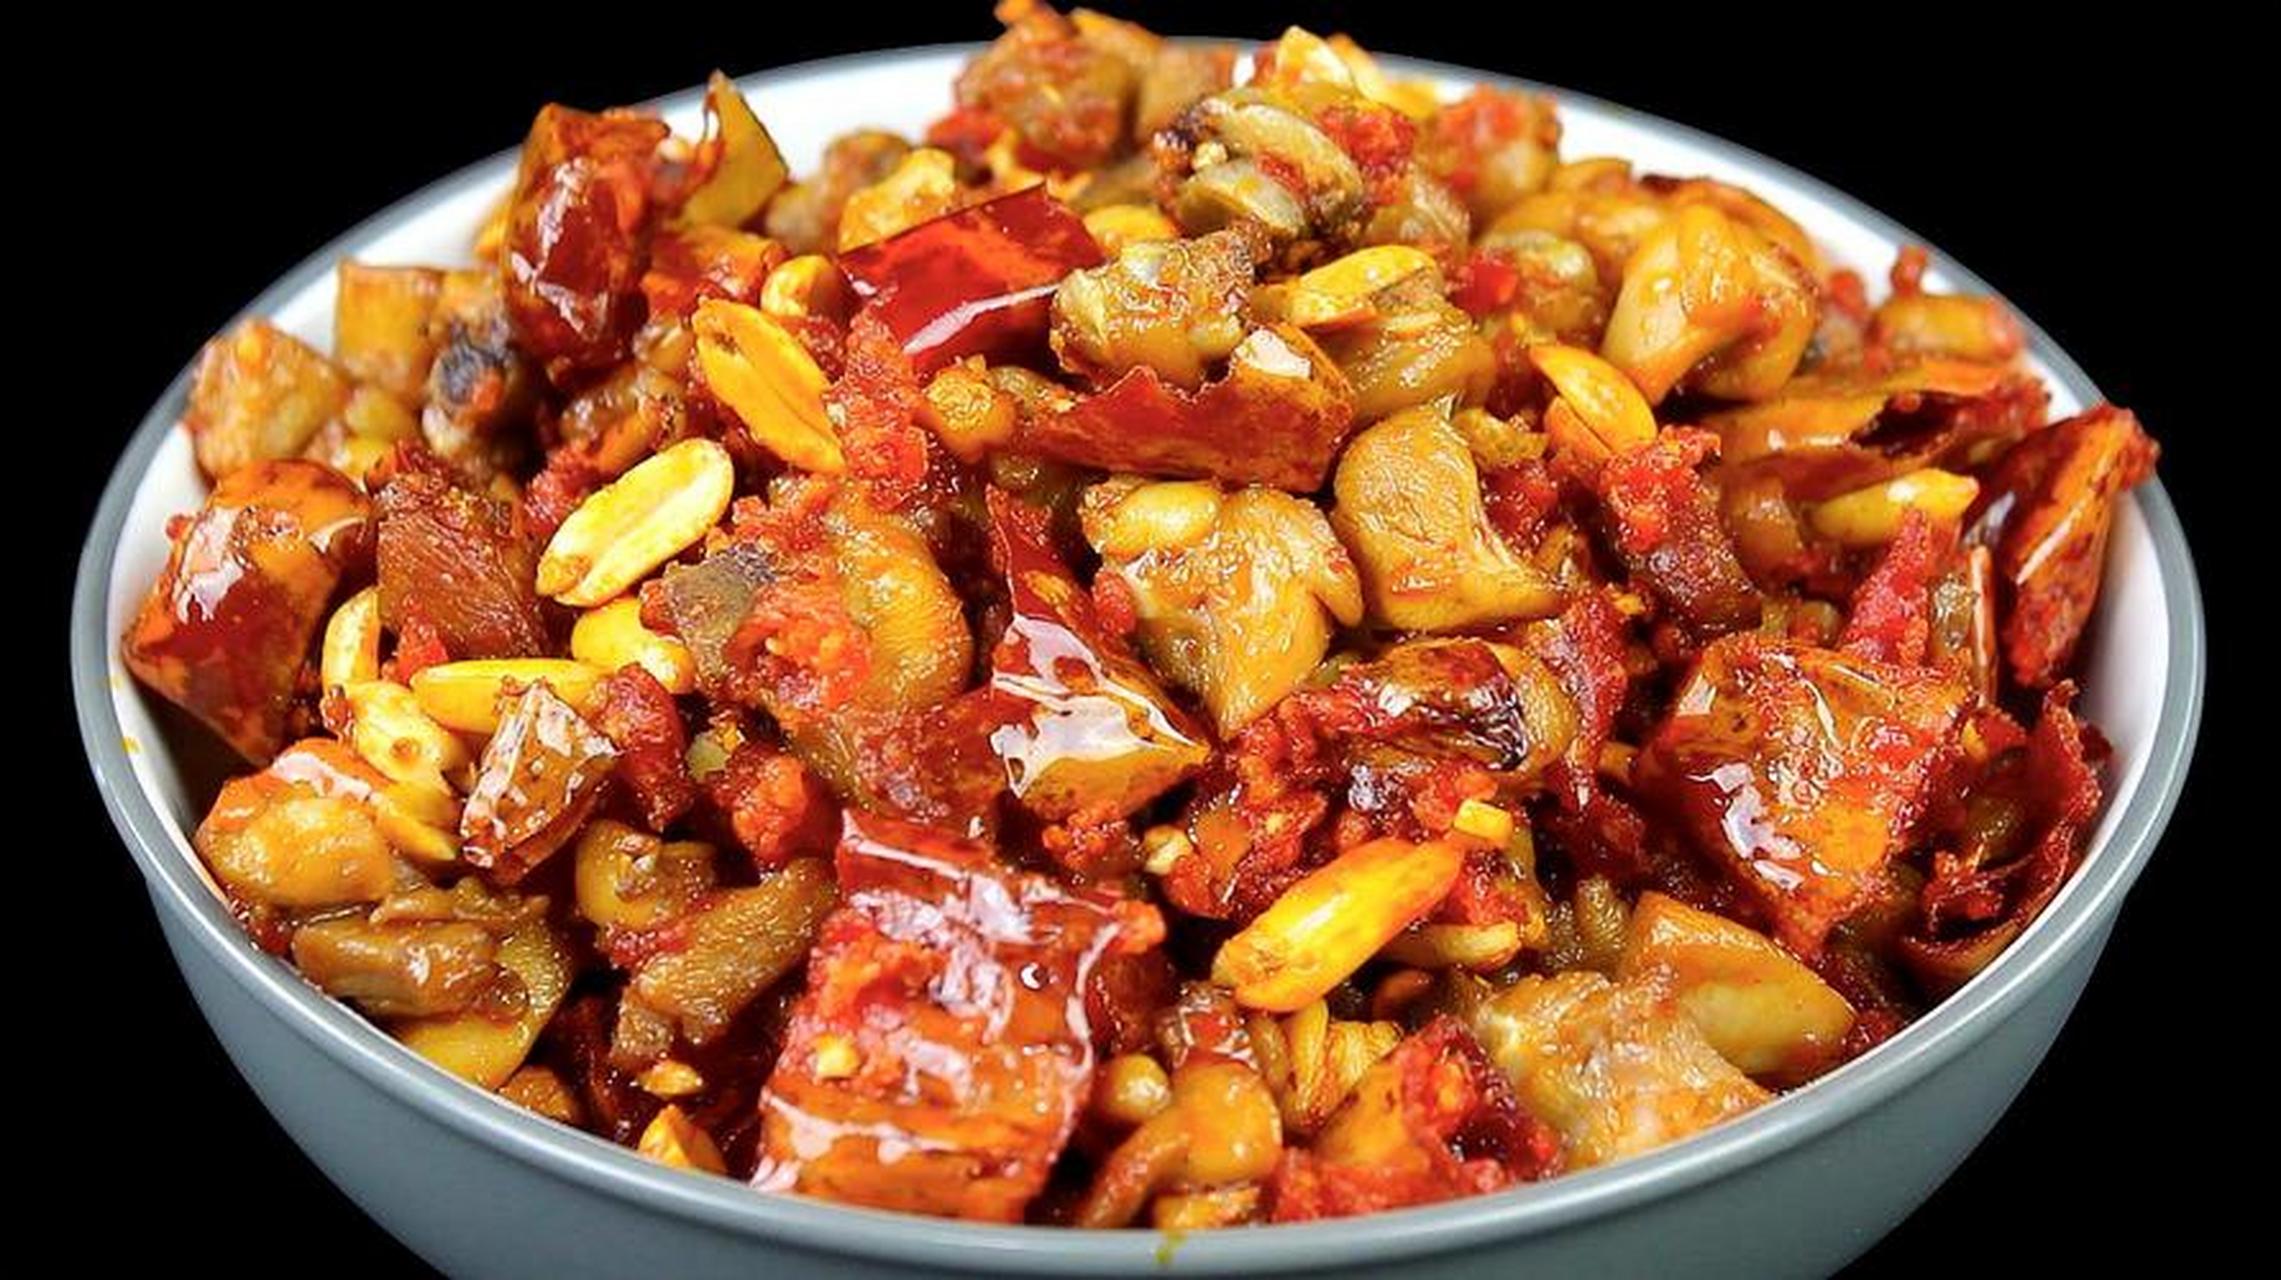 99辣子鸡丁的做法99 95辣子鸡丁是一道传统的川菜菜品,以鸡肉为